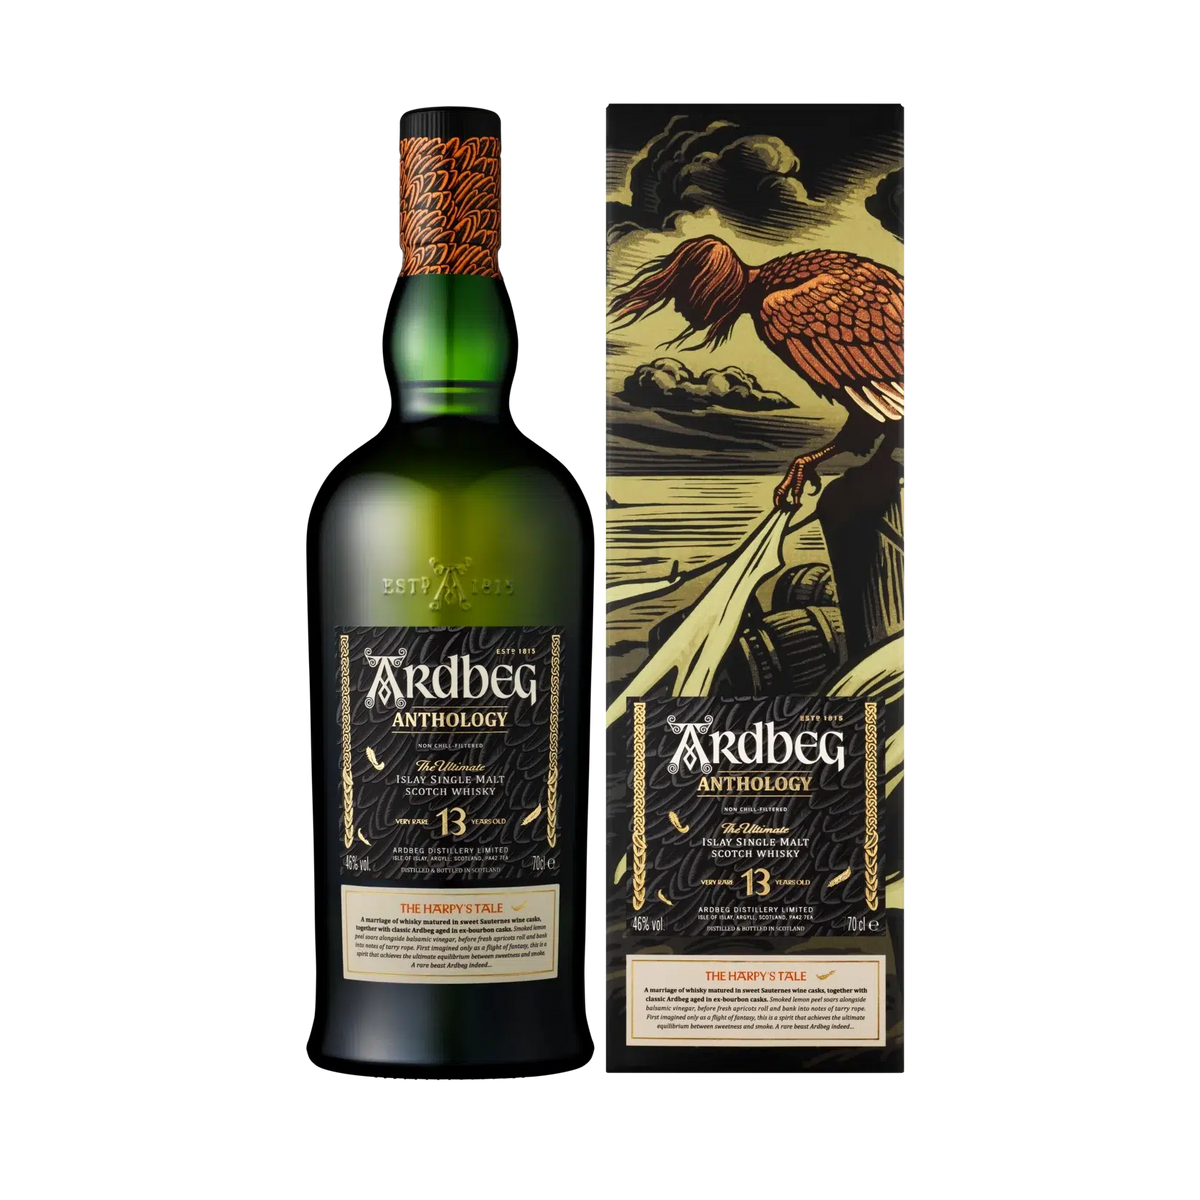 Ardbeg Anthology 13 Years Old Limited Edition Whisky 700ml